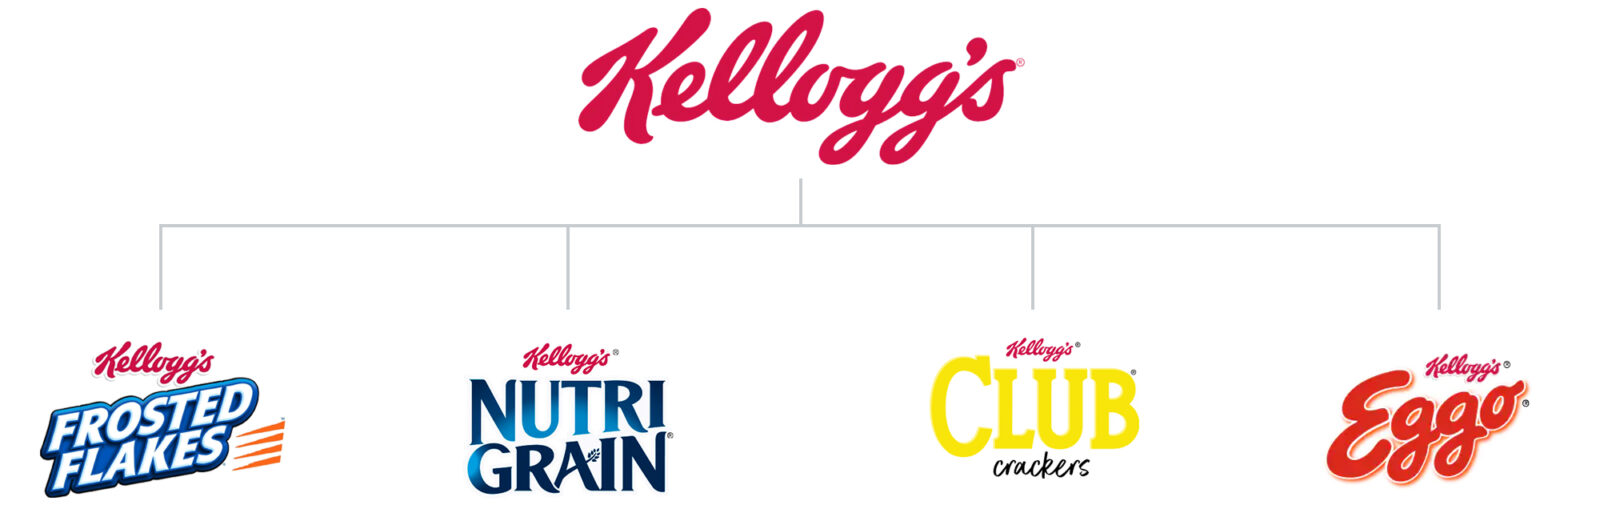 Kellogg's Brand Architecture Diagram